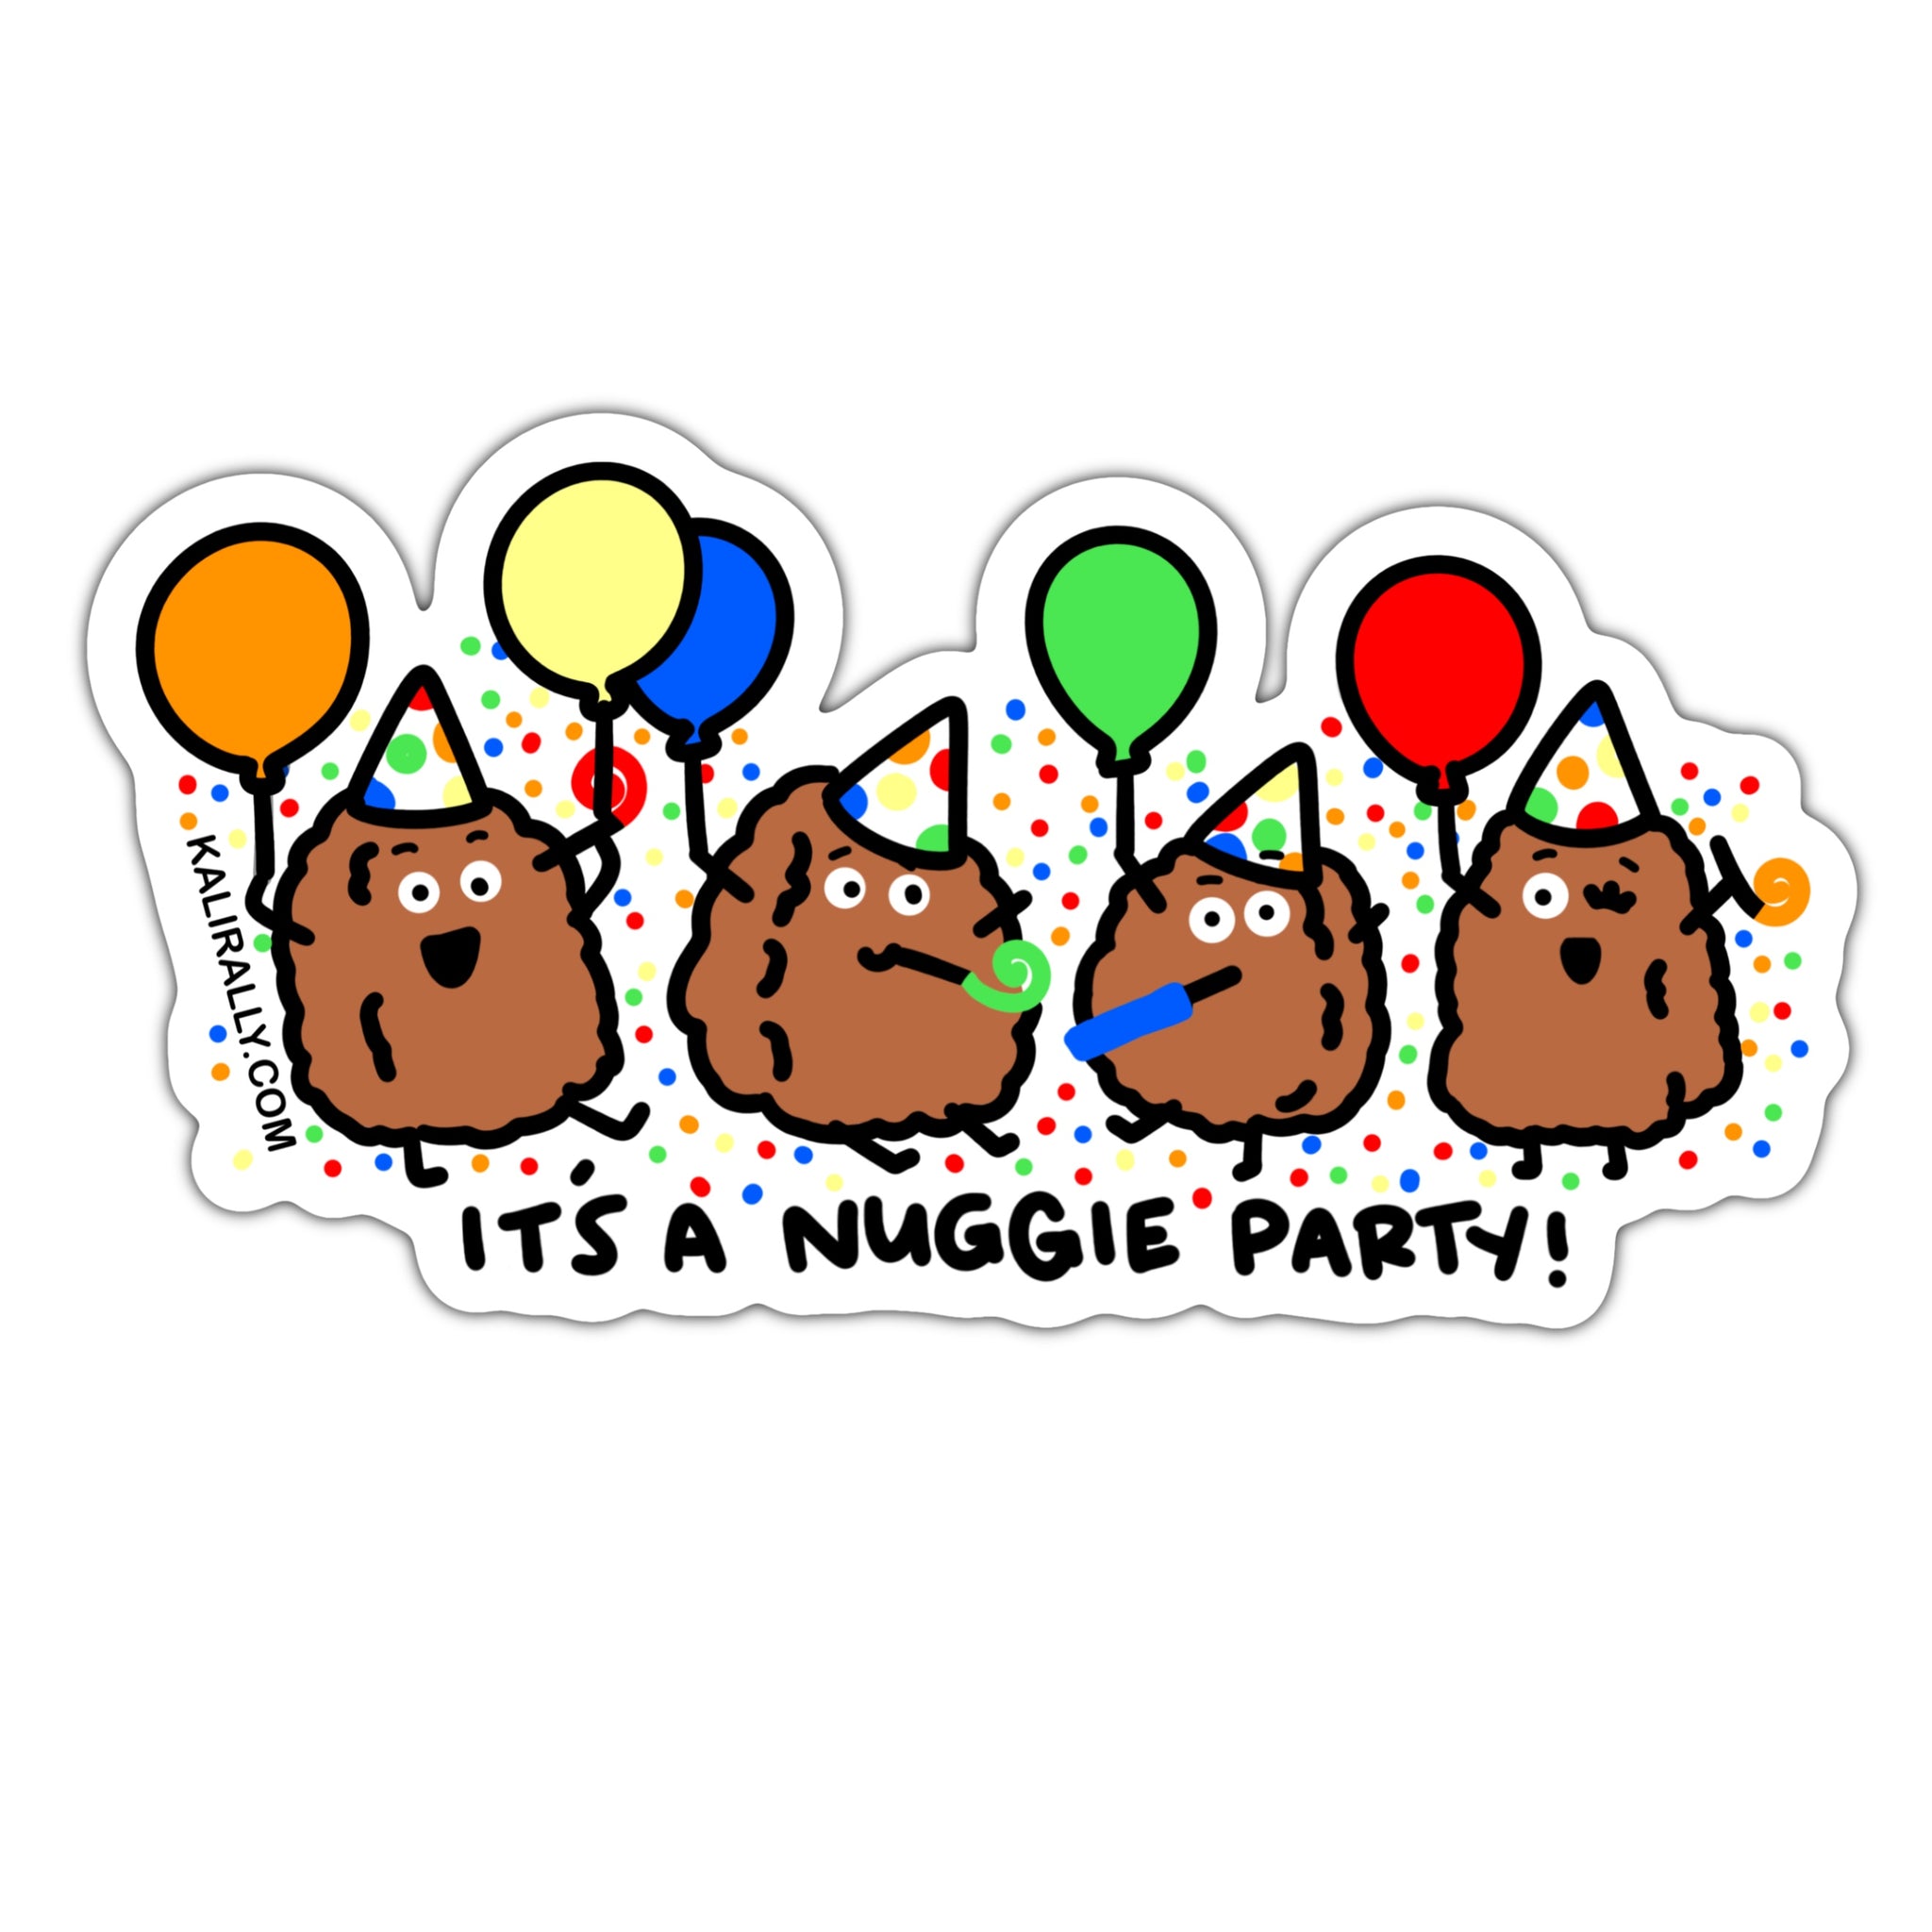 Chicken nugget party birthday party sticker, waterproof sticker